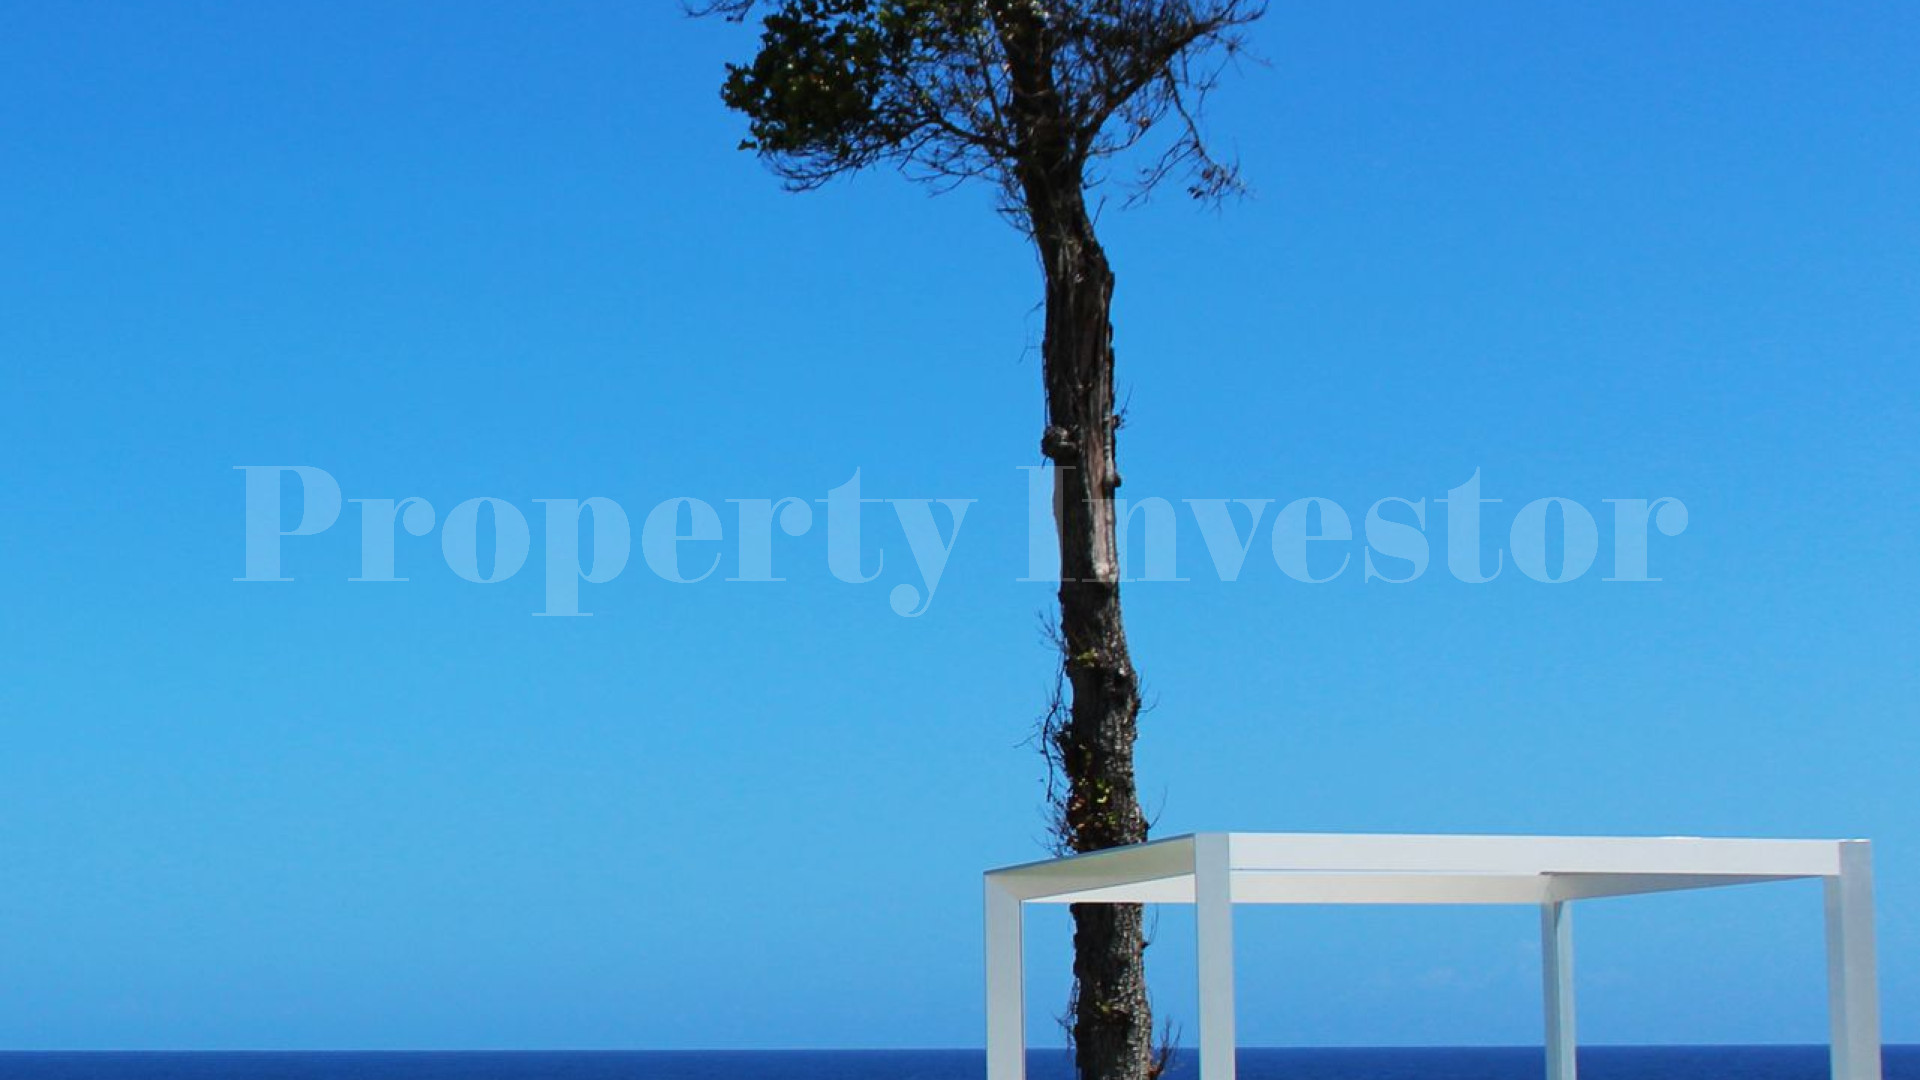 Участок в собственность в Доминиканской Республике с финансированием до 10 лет (Lot 44)